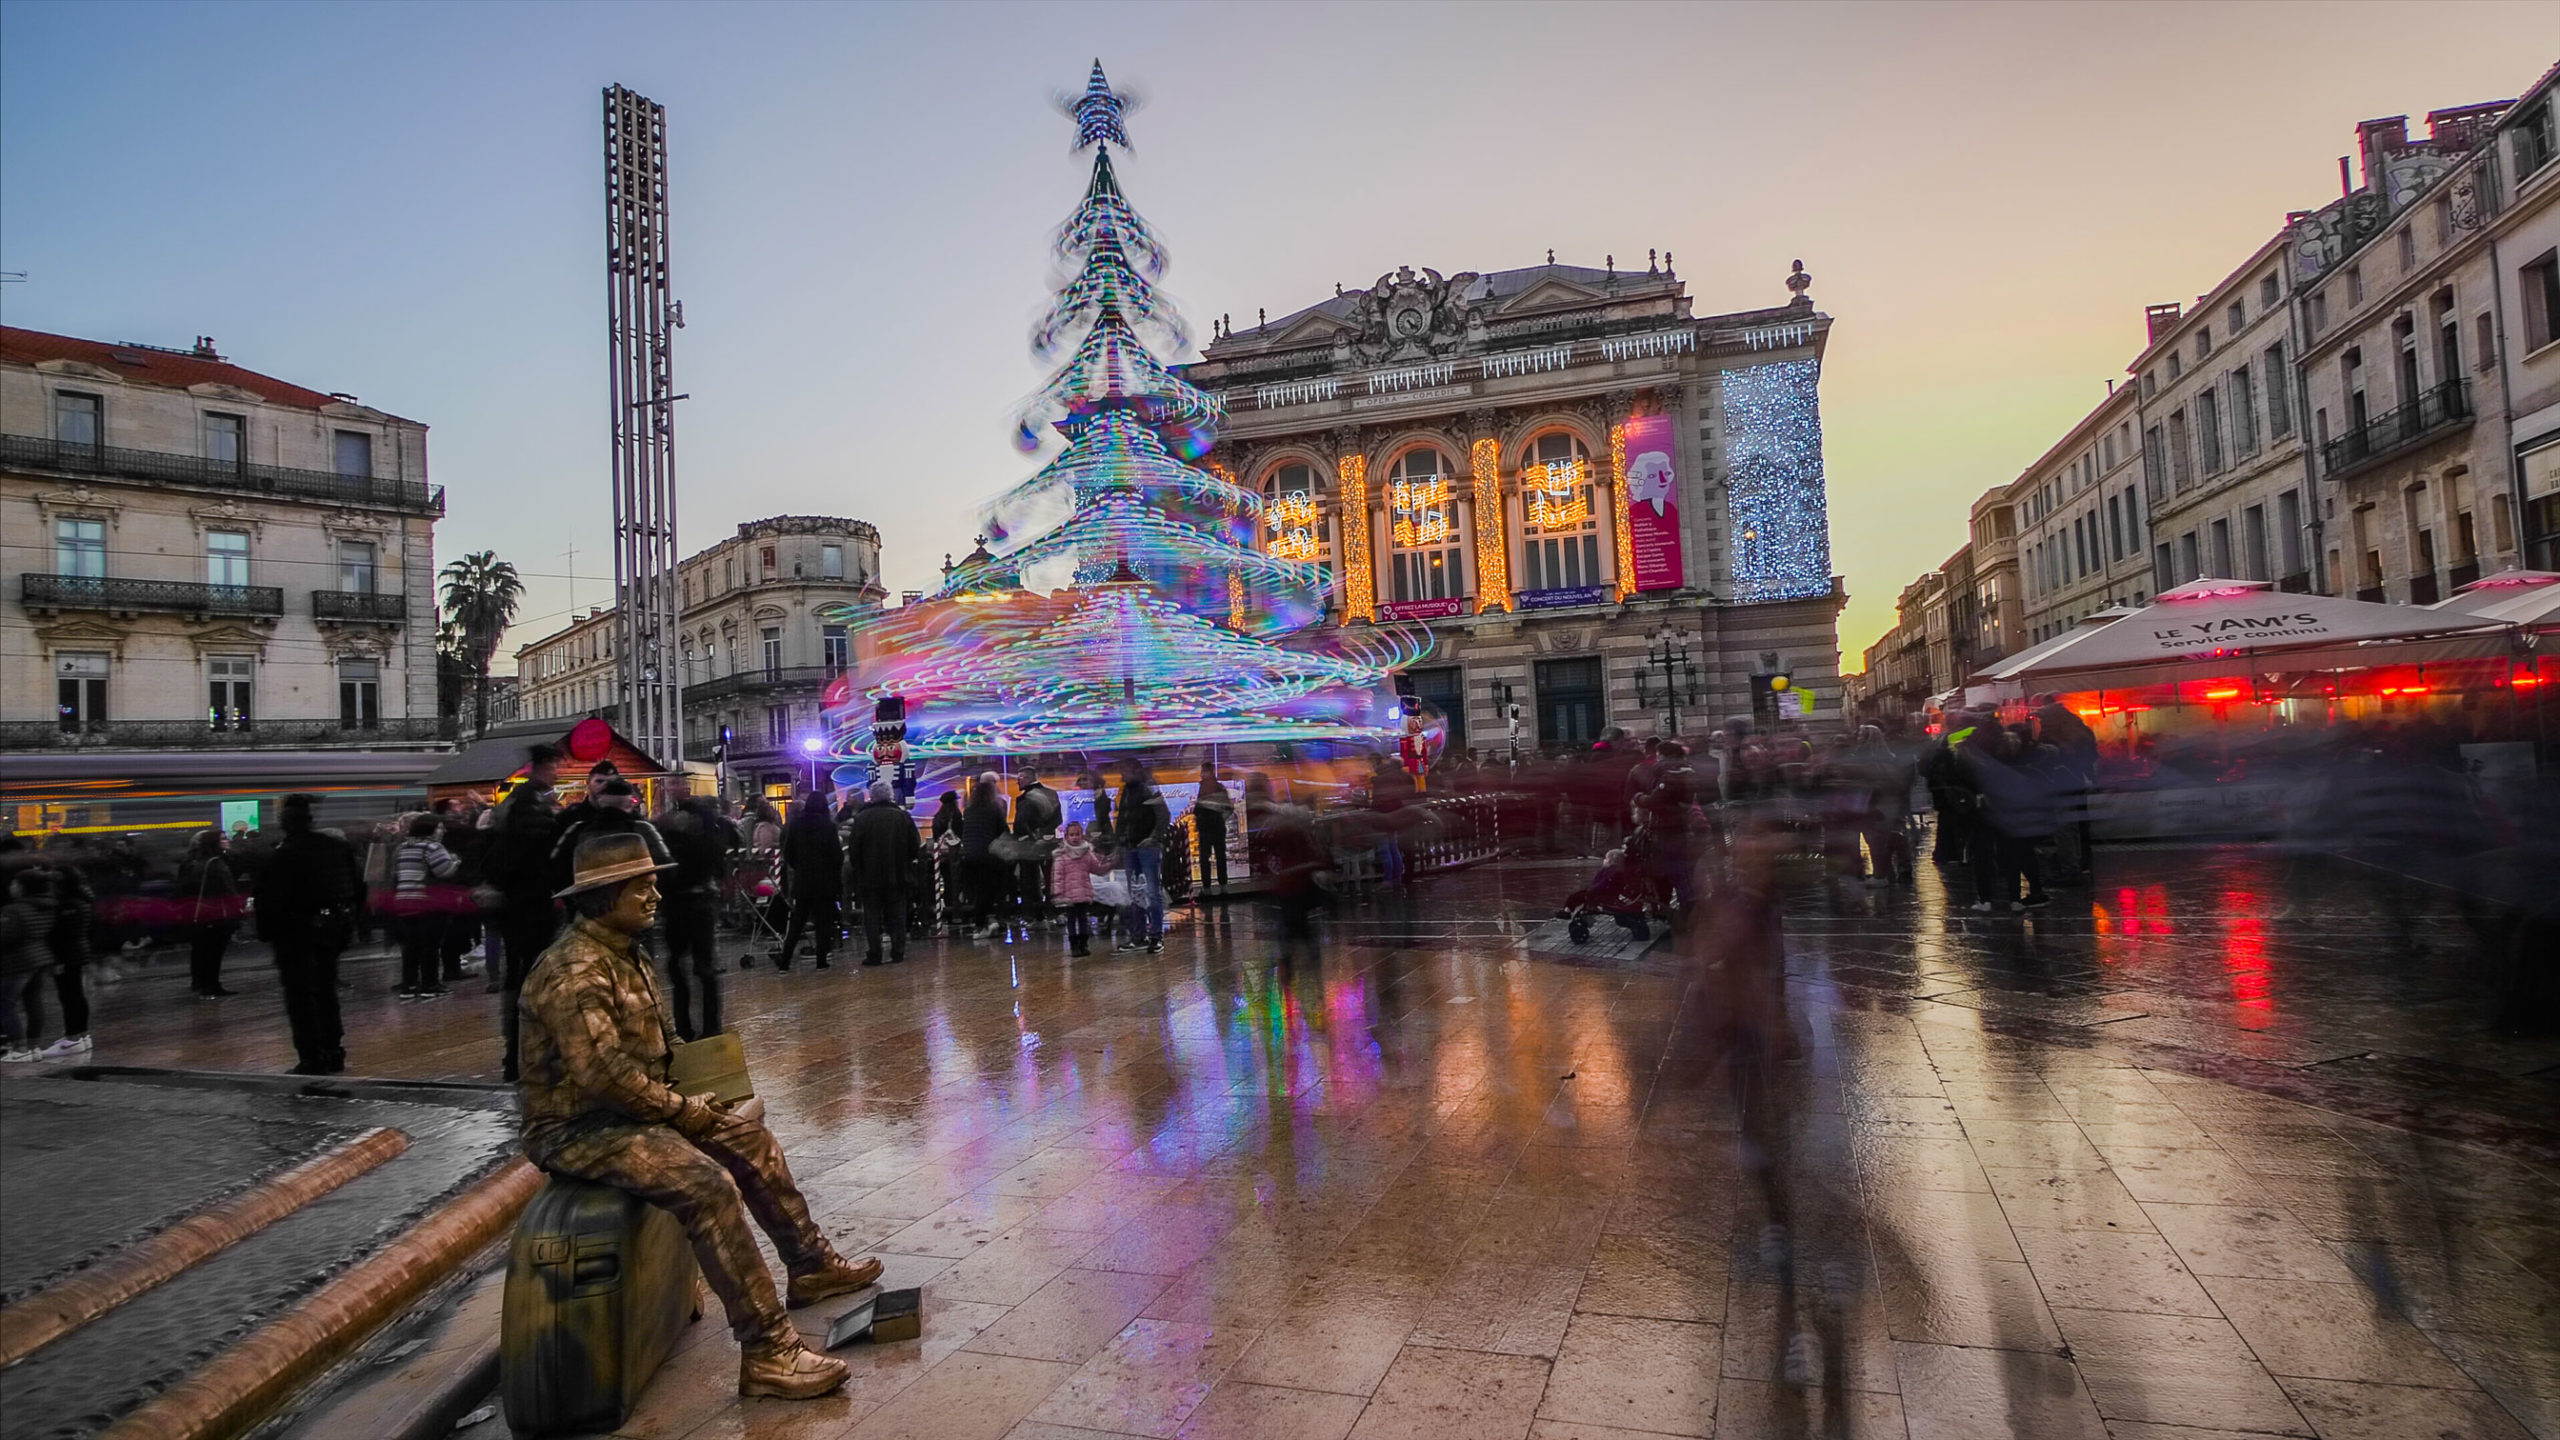 Photograph of Place de la Comédie during Christmas in Montpellier